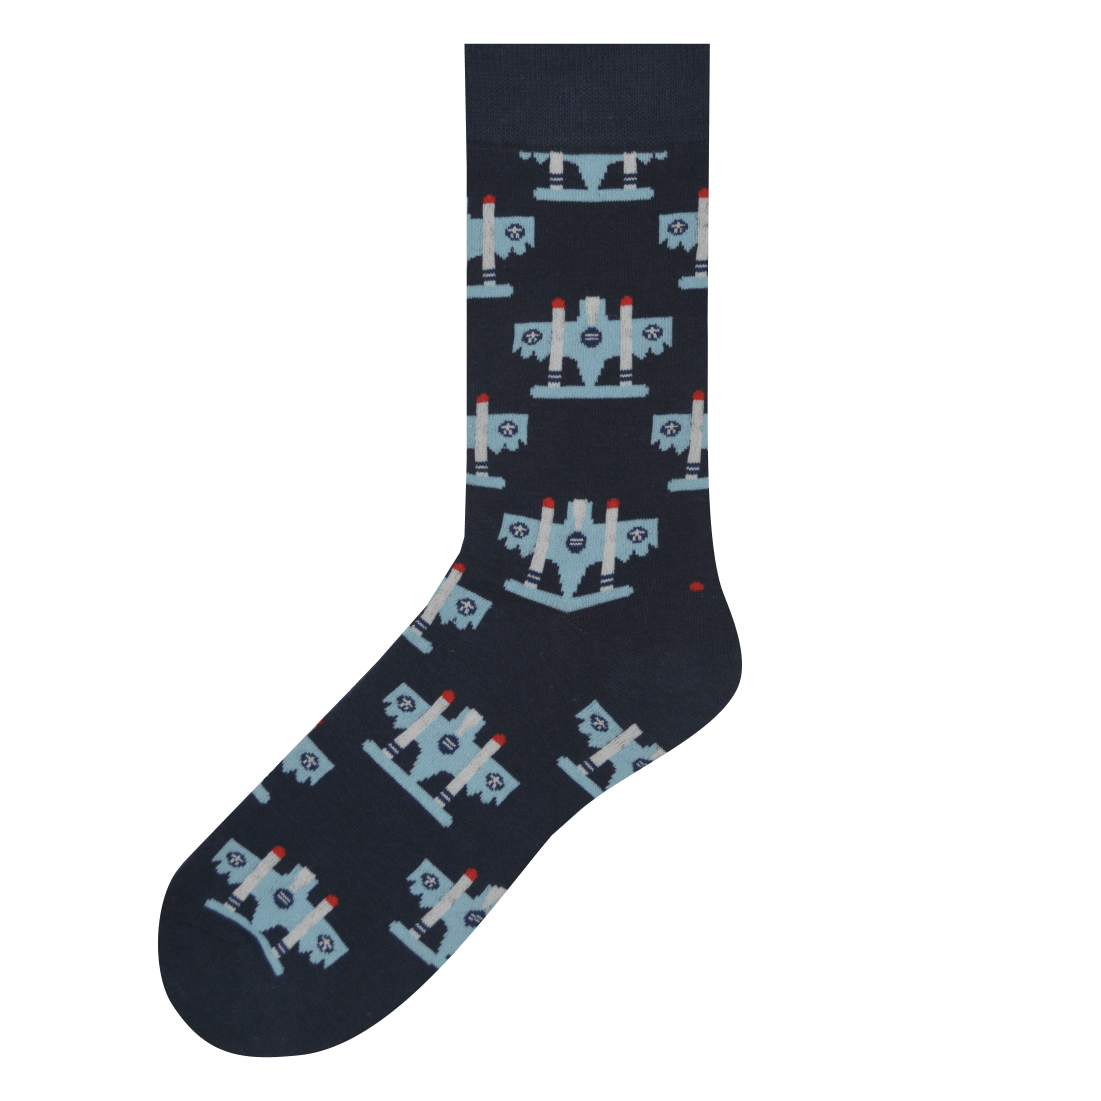 Medias Locas calcetines divertidos de diseño de aviones Freaky Socks